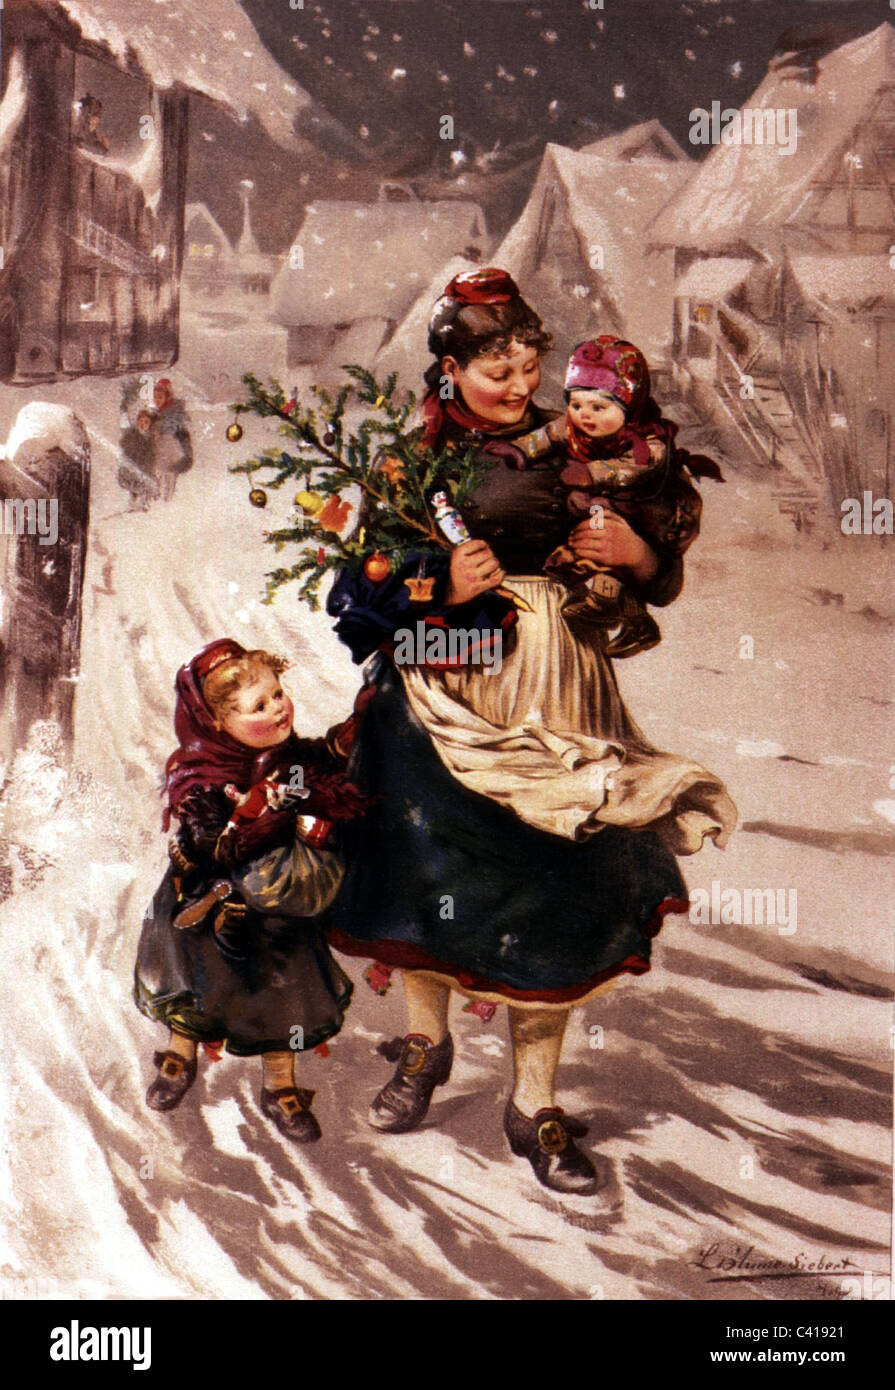 Noël, 'après le don', lithographie après peinture par Ludwig Blume-Siebert (1853 - 1929), publié en 1886, droits additionnels-Clearences-non disponible Banque D'Images